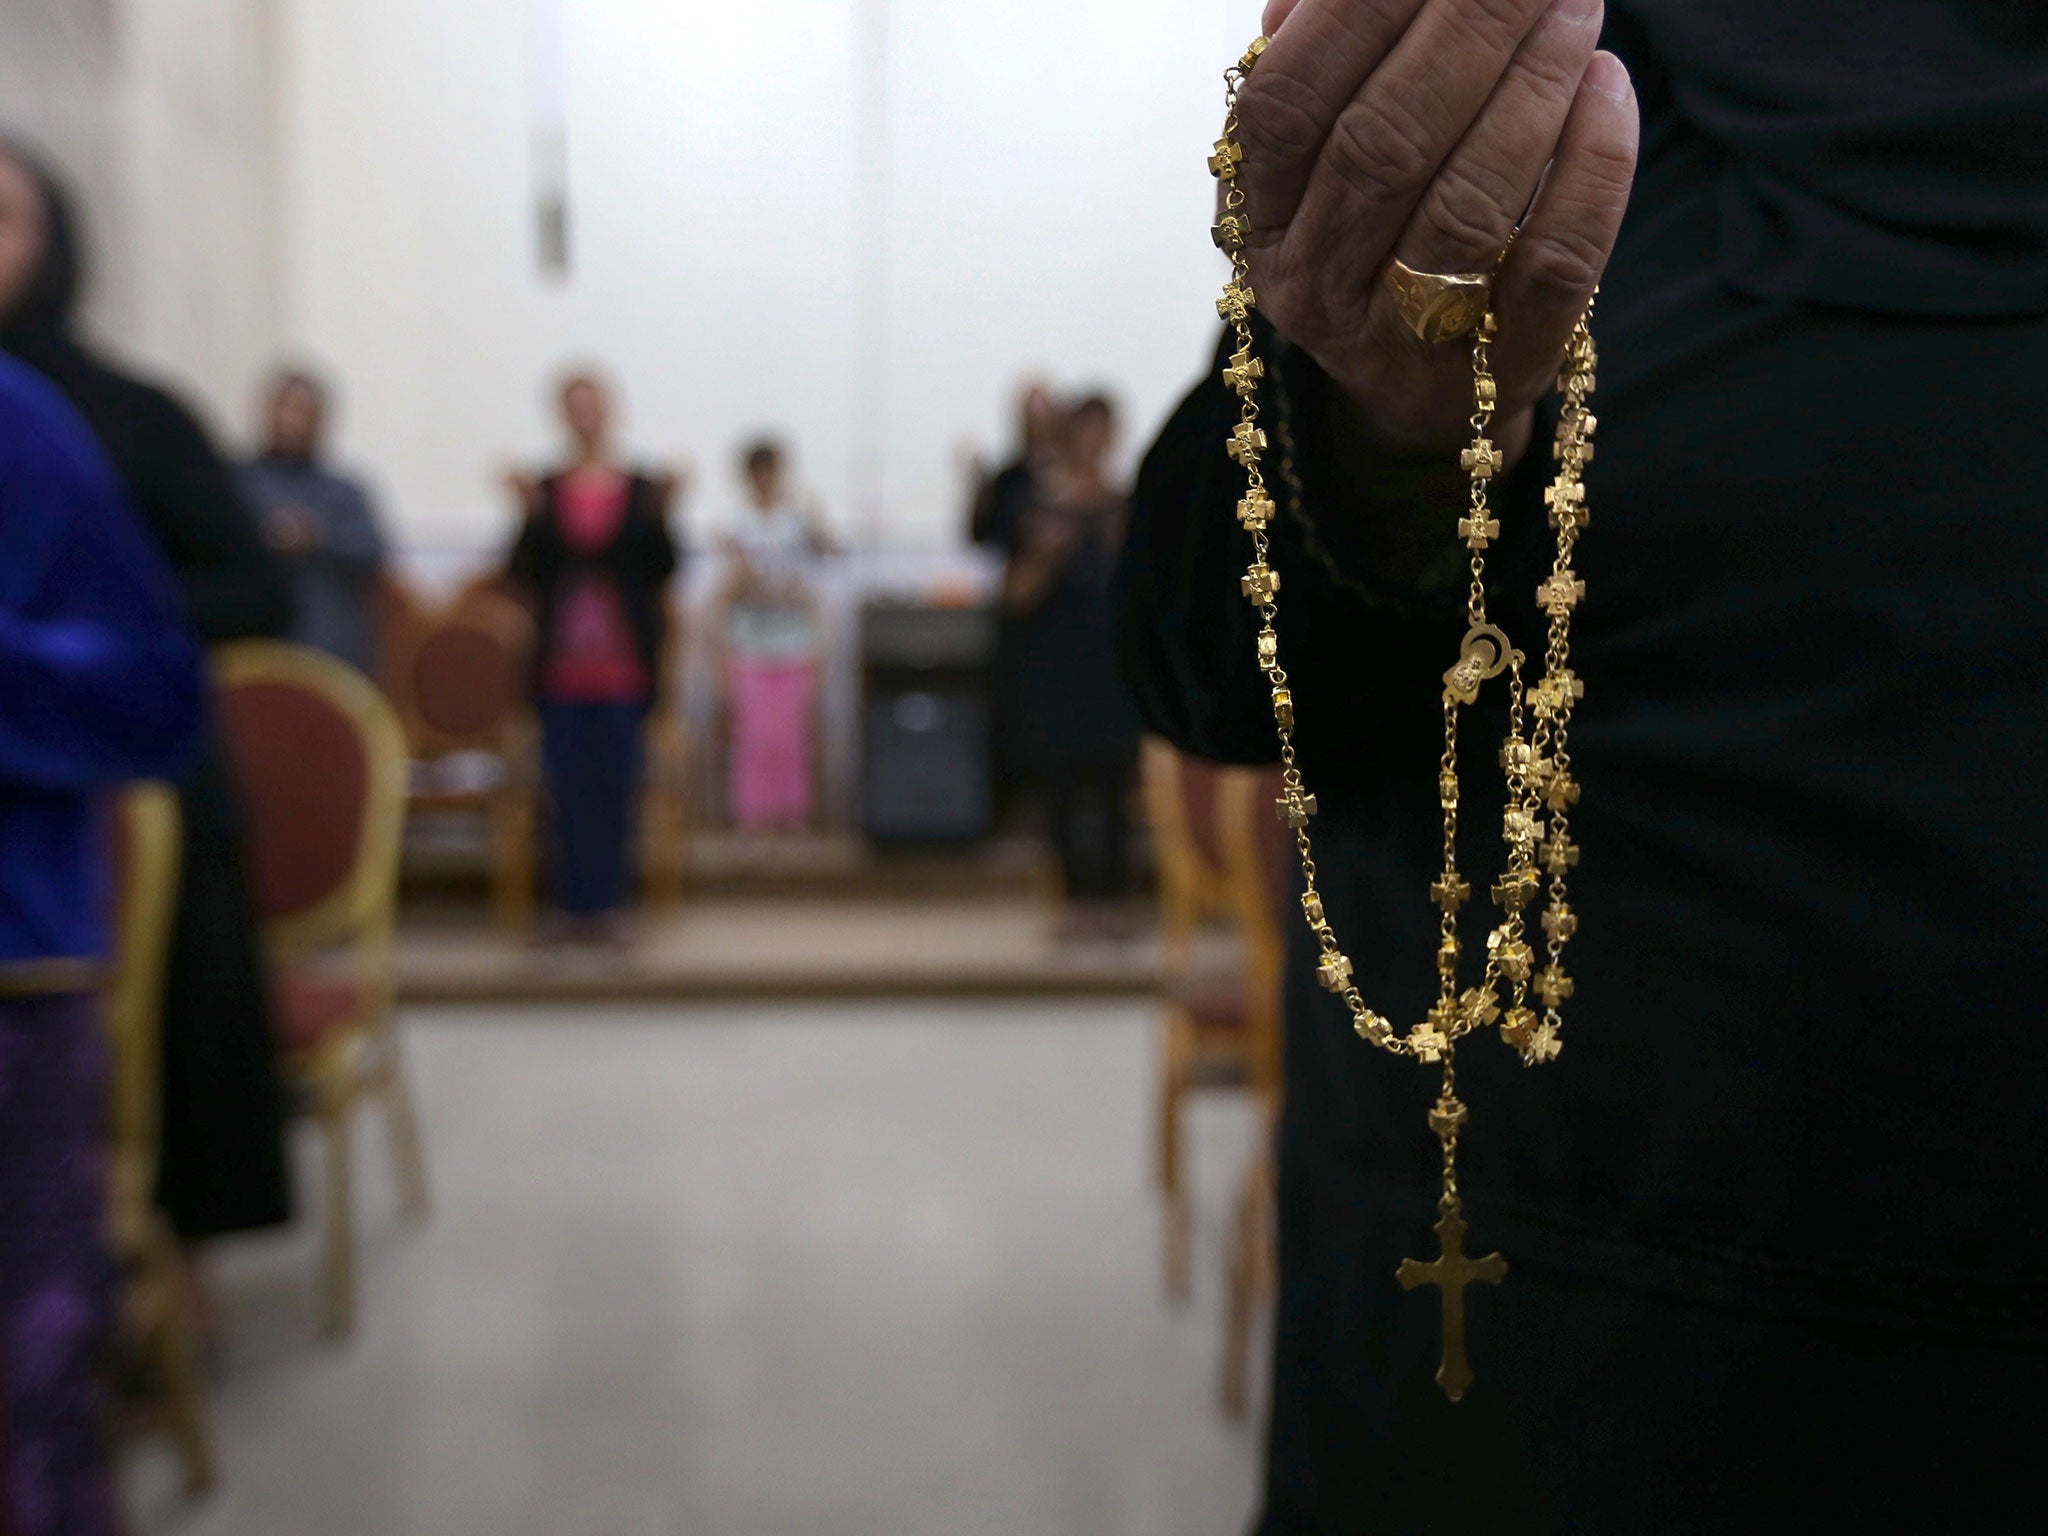 Christians who fled Mosul pray at a church in Qaraqosh